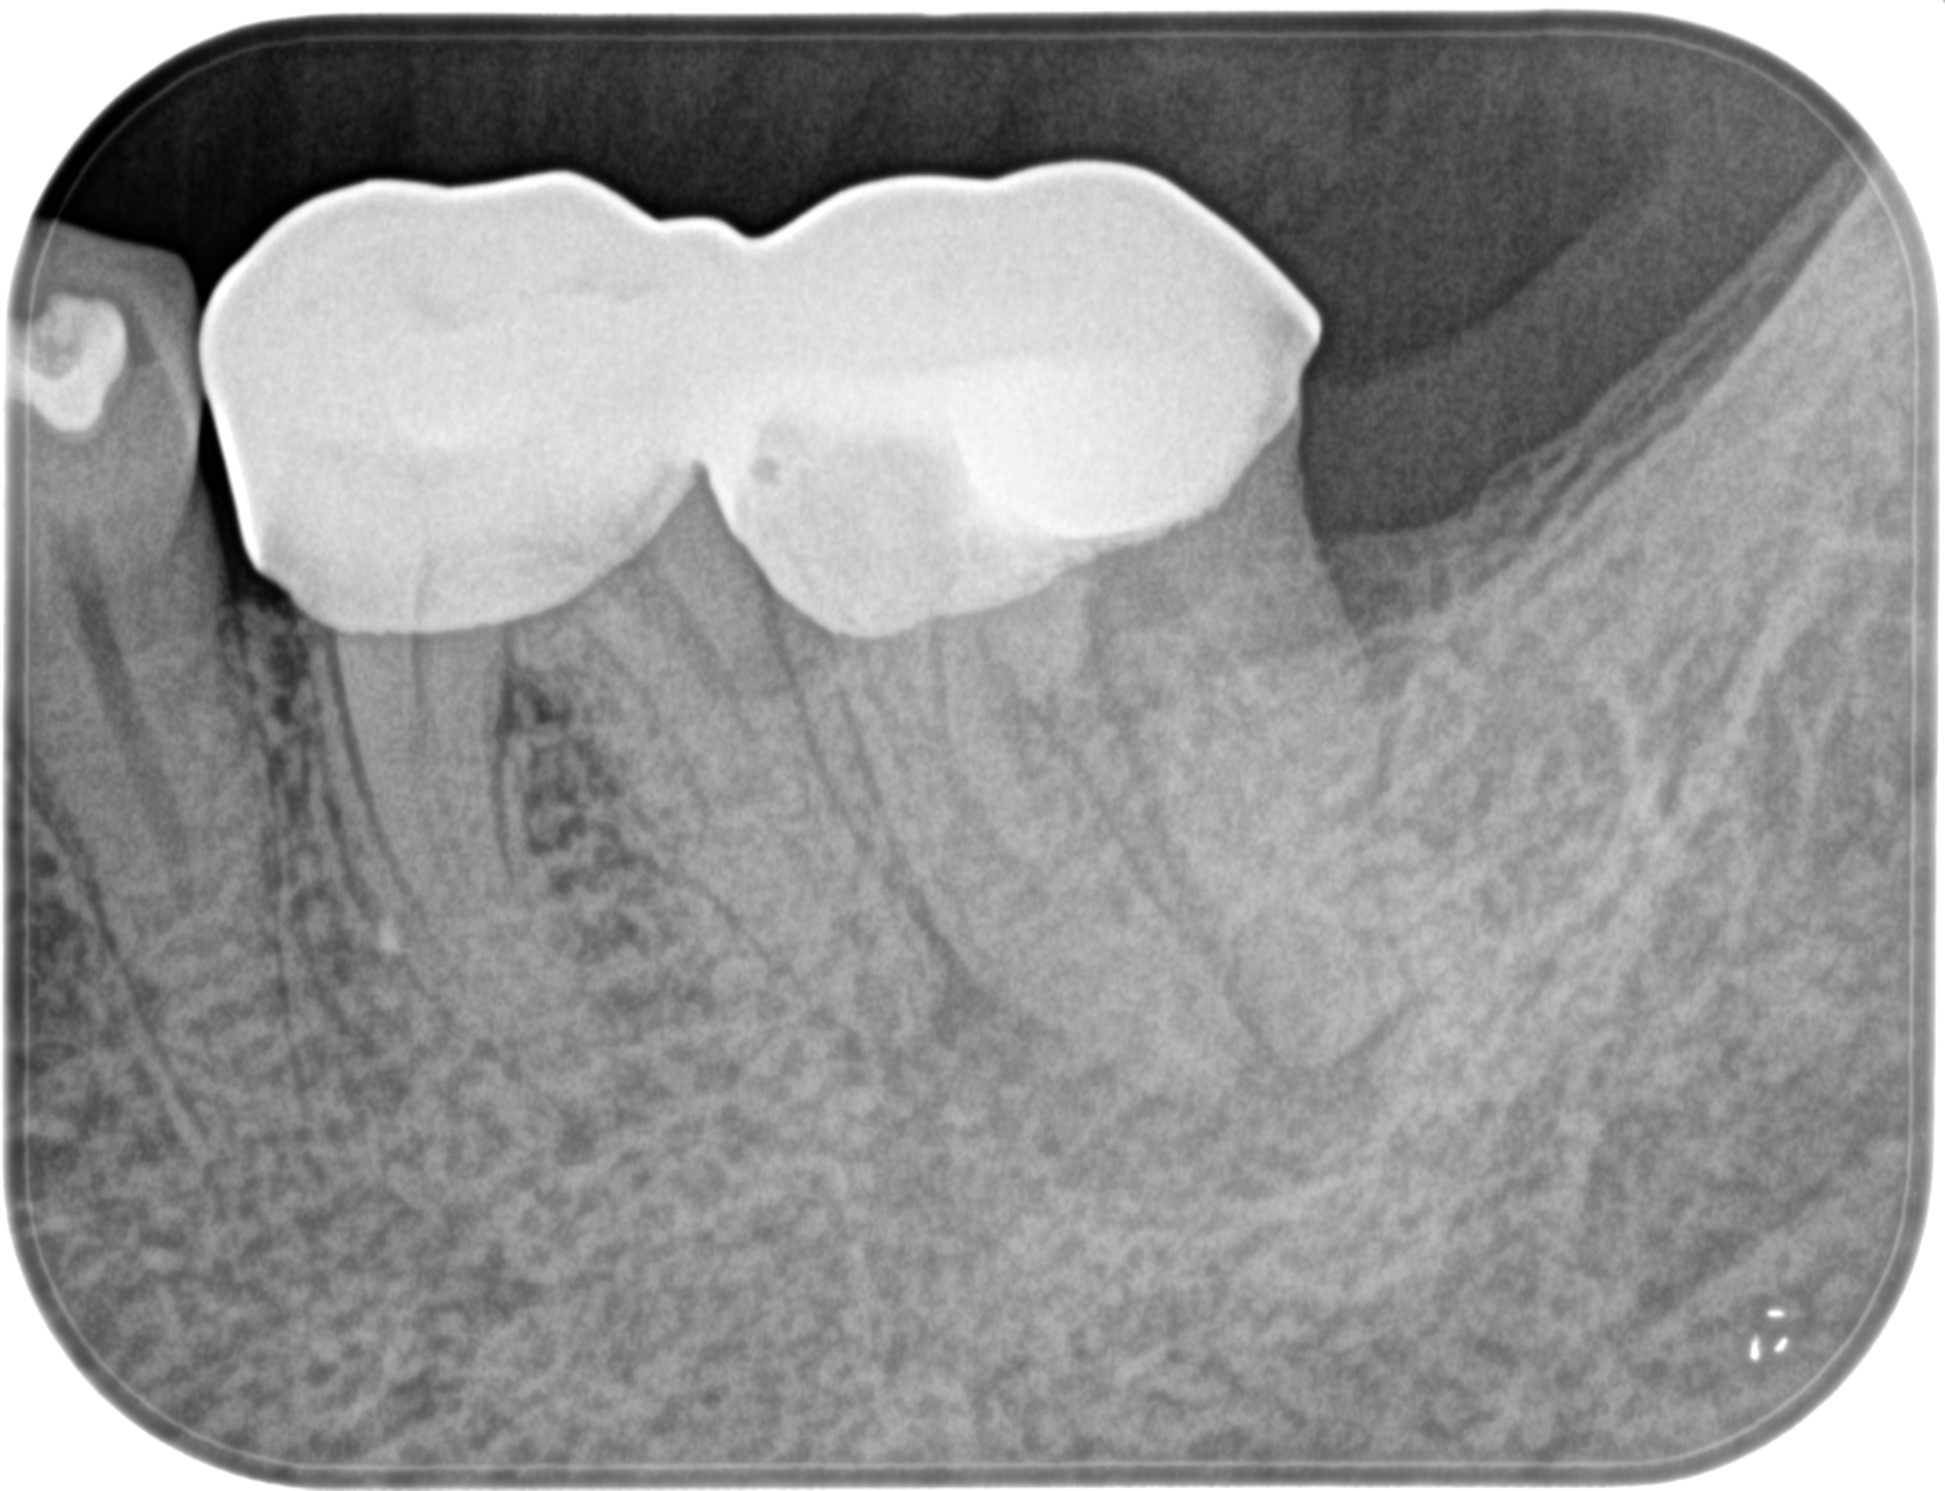 下顎の大臼歯は歯内療法専門医に任せた方が無難な理由〜#18 Initial 